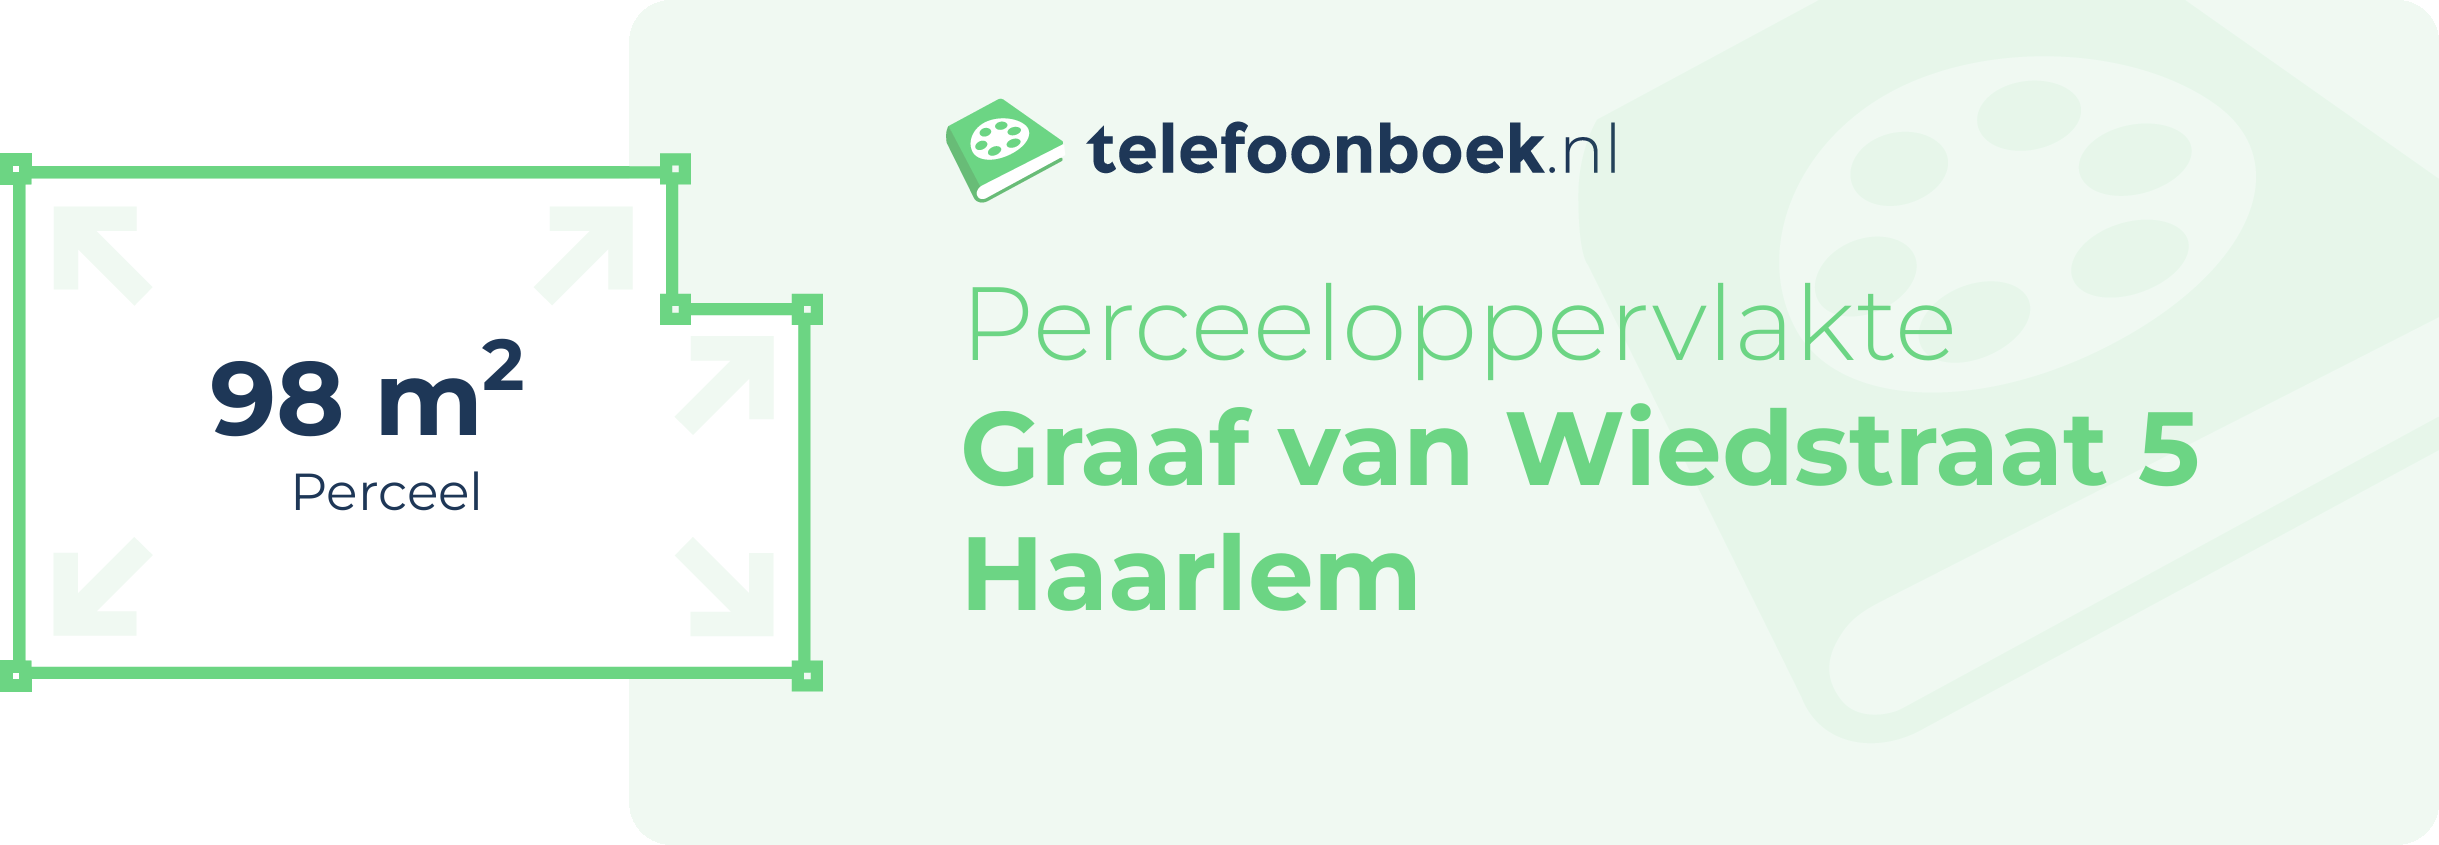 Perceeloppervlakte Graaf Van Wiedstraat 5 Haarlem